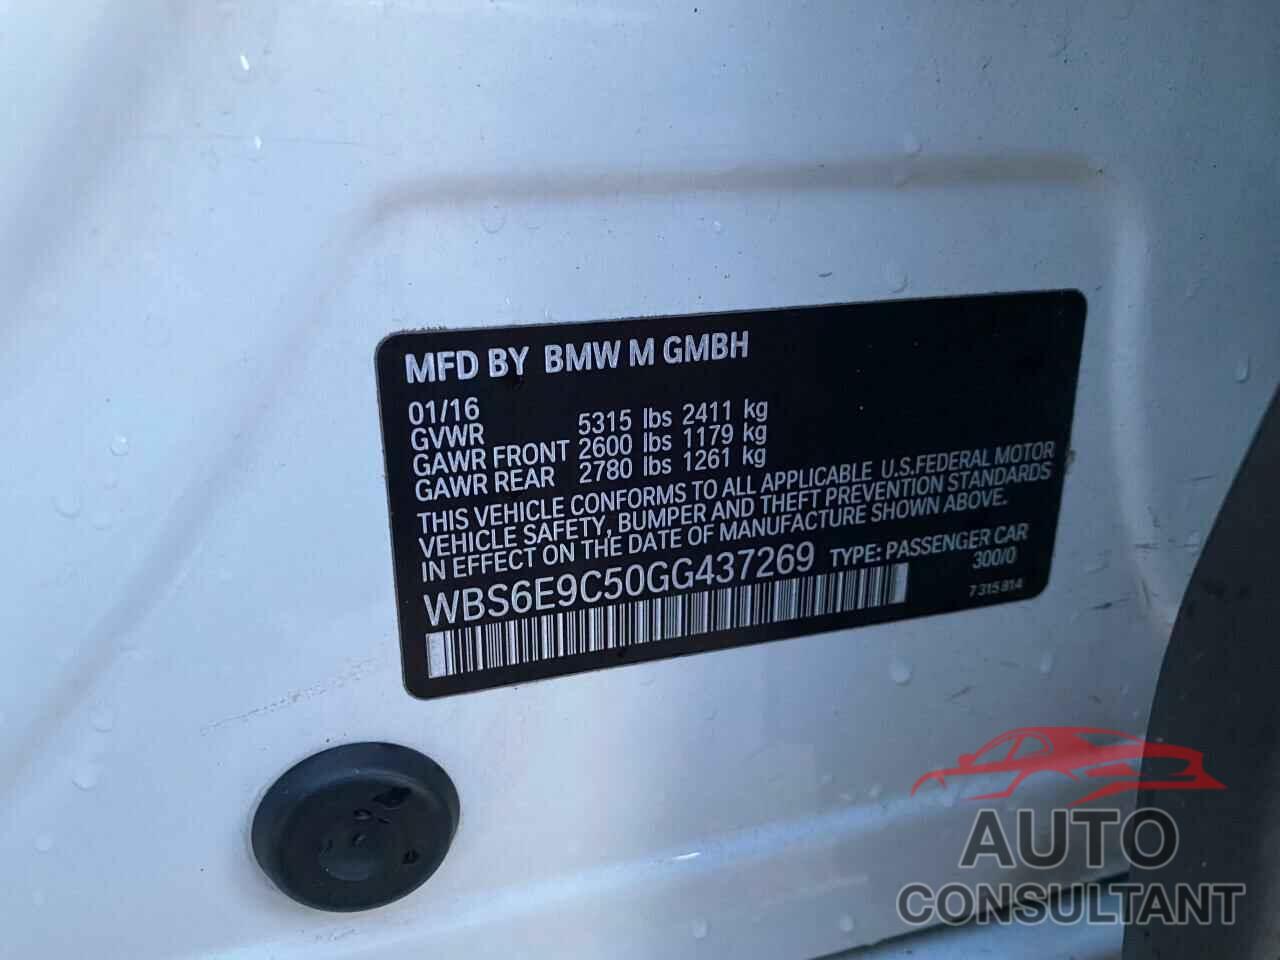 BMW M6 2016 - WBS6E9C50GG437269